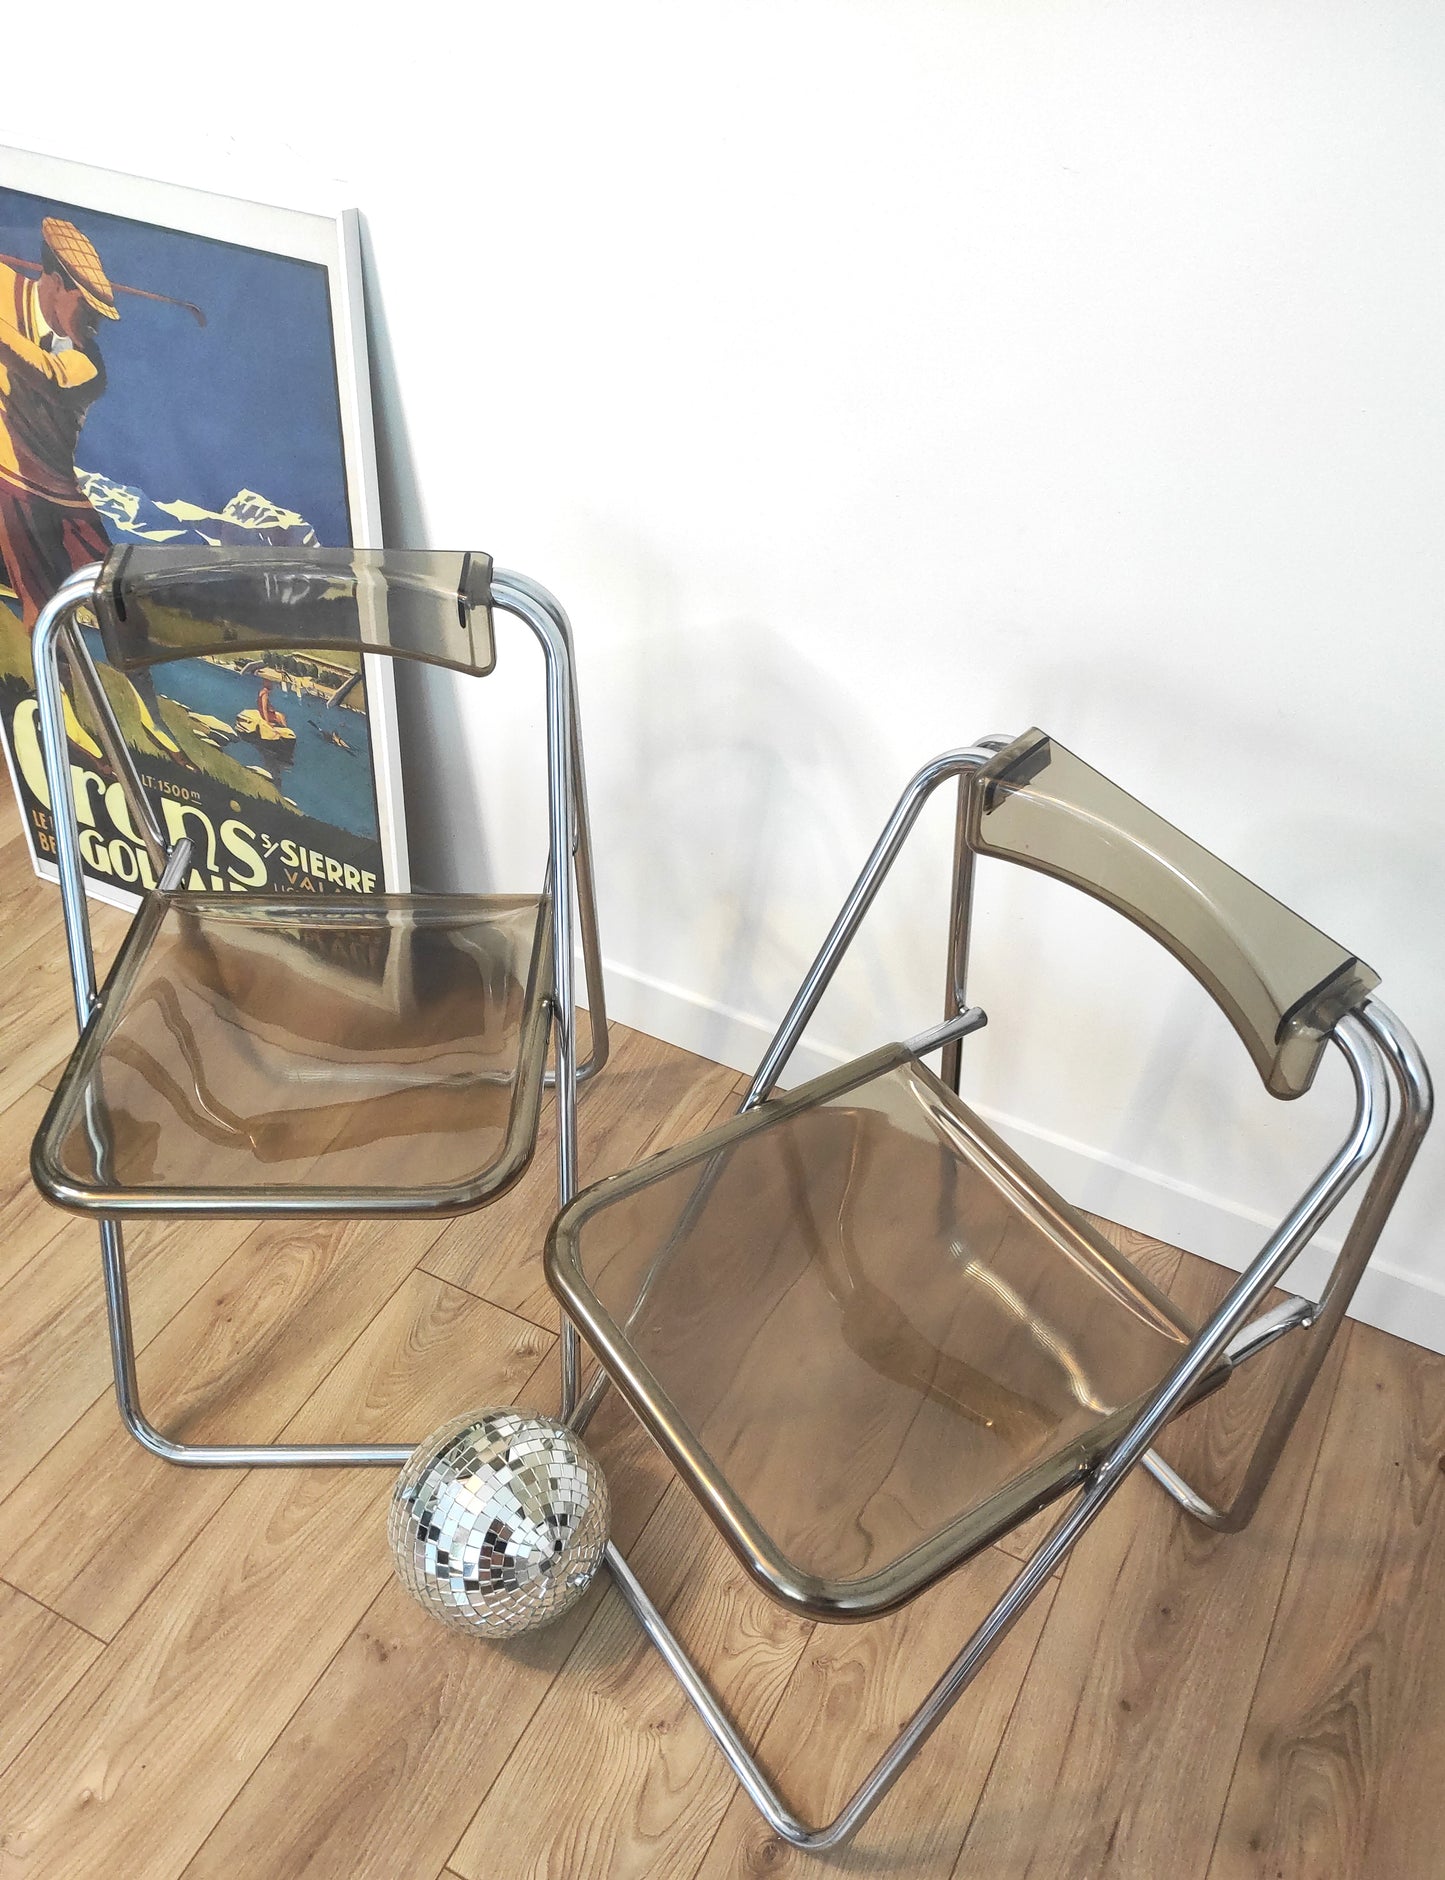 Paire de chaises pliantes vintage plexiglas fumé par Aldo Jacober style PLIA. On aime la simplicité et look très seventies de cette jolie paire de chaises du designer ALDO JACOBER dans le style PLIA GIANCARLO PIRETTI CASTELLI.  Elles sont totalement dans leur jus depuis les années 70.   En plexiglas fumé et métal chromé , peu encombrantes, elles seront parfaites dans votre bureau ou autour de votre table !   Les chaises, pour leur âge sont en très bon état malgré quelques traces du temps.